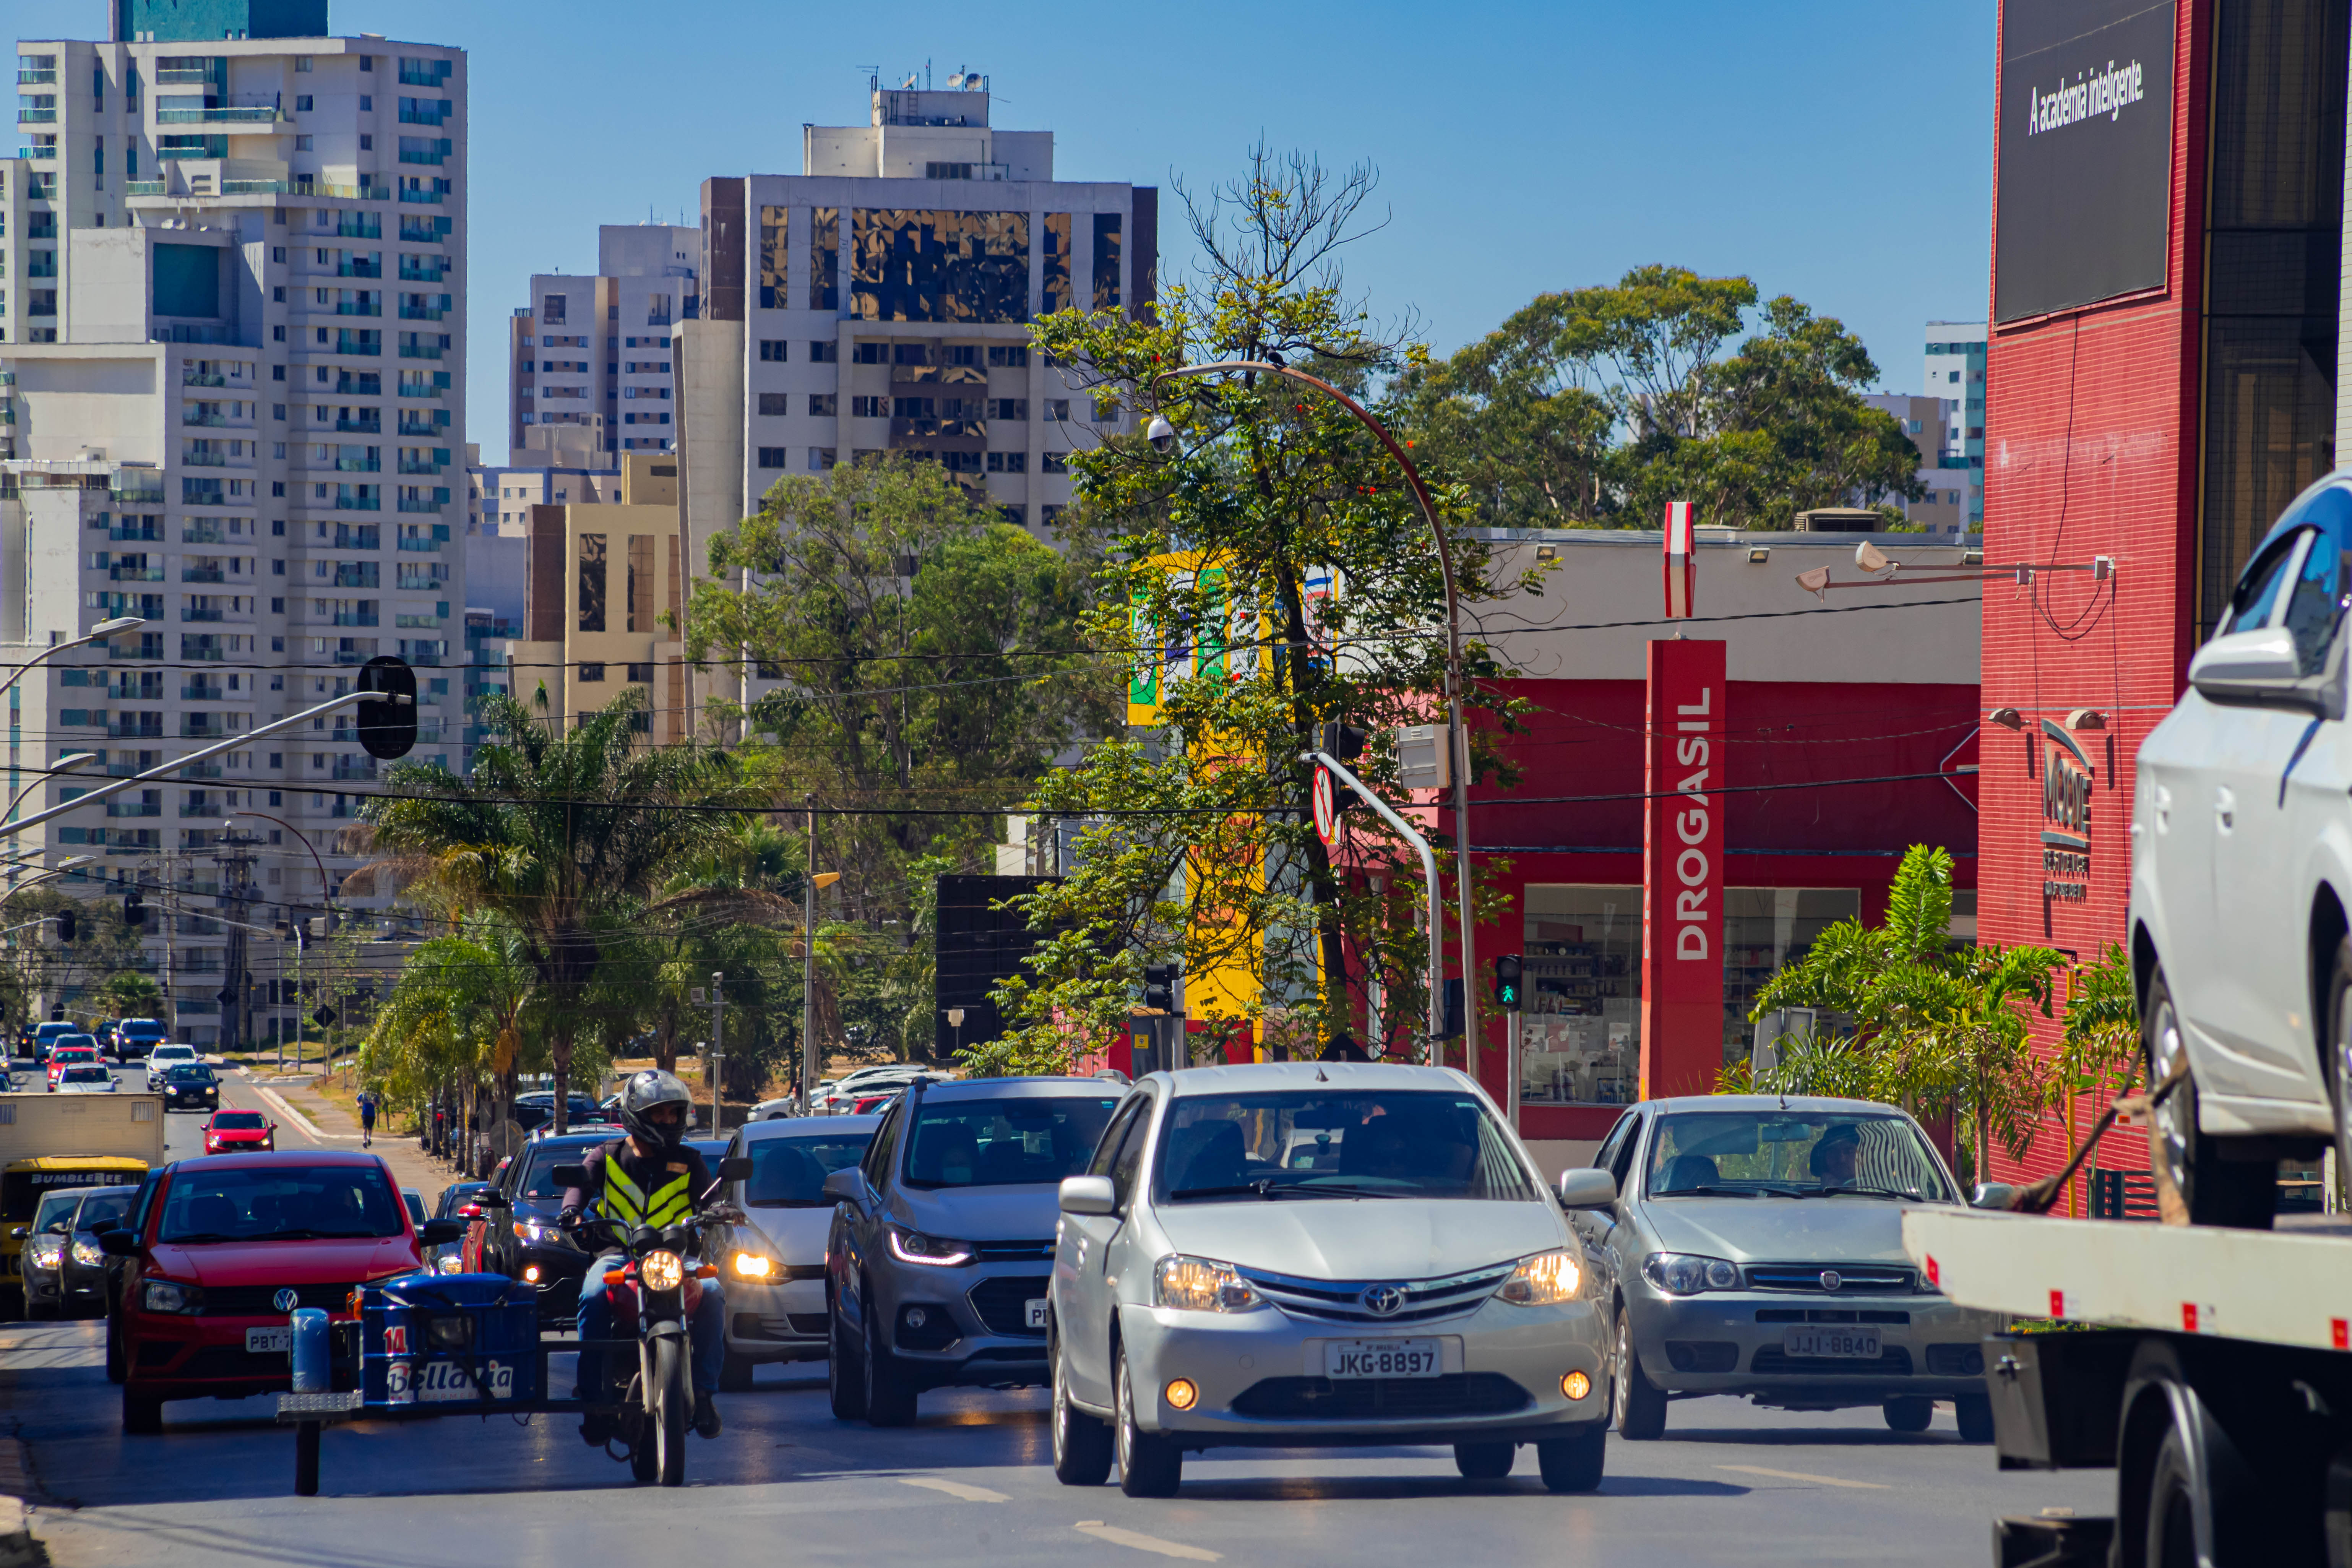 Avenida principal de Águas Claras com carros parados, prédios ao fundo e céu azul ilustrando o tempo quente.